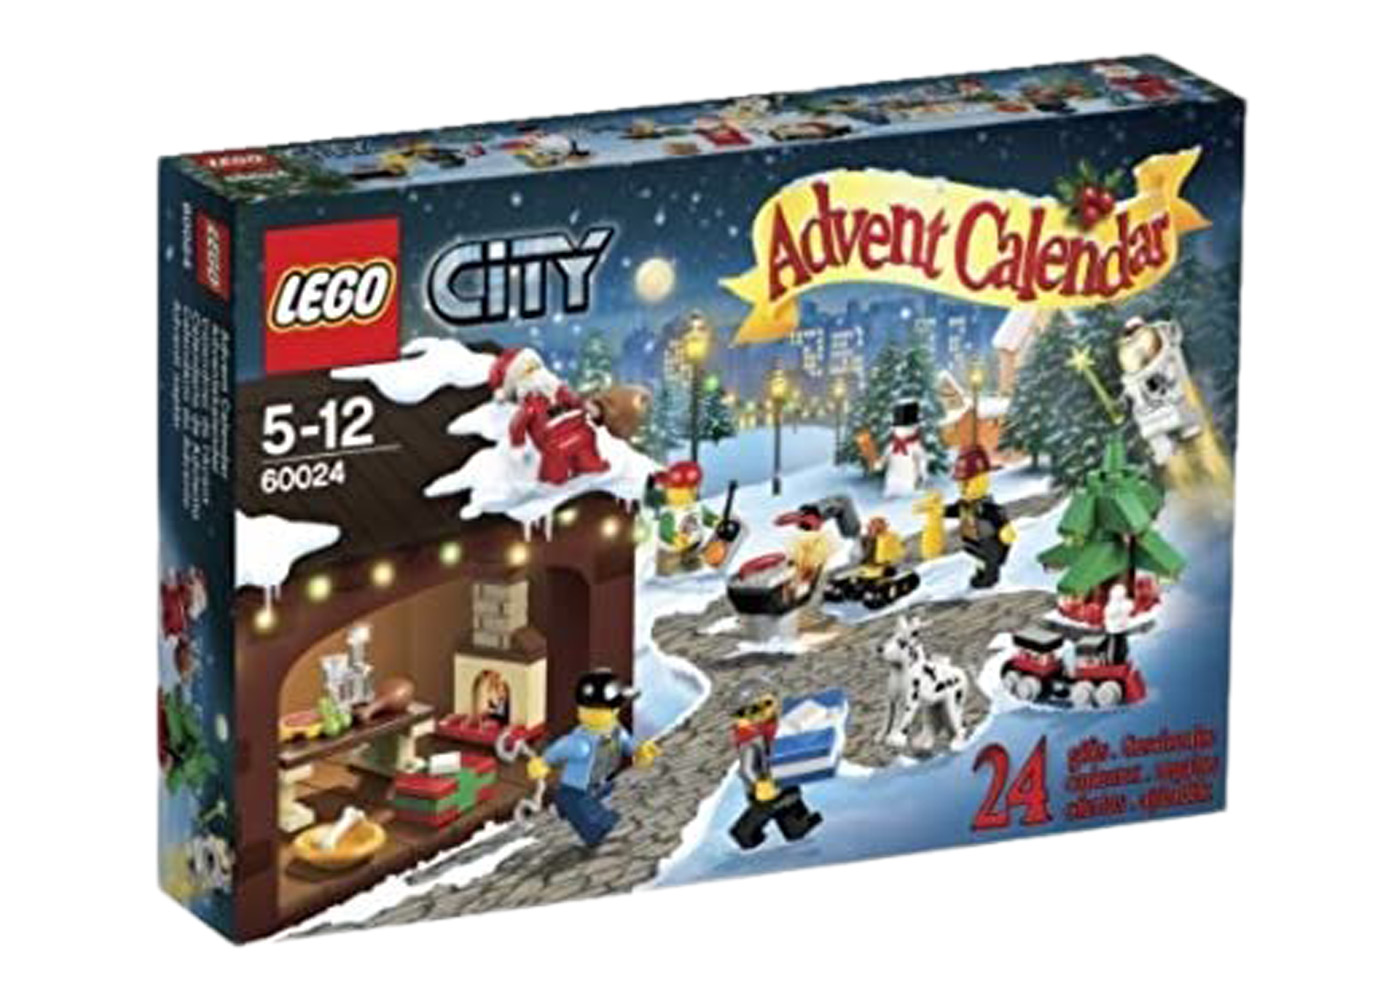 LEGO City Advent Calendar Set 60024 - GB